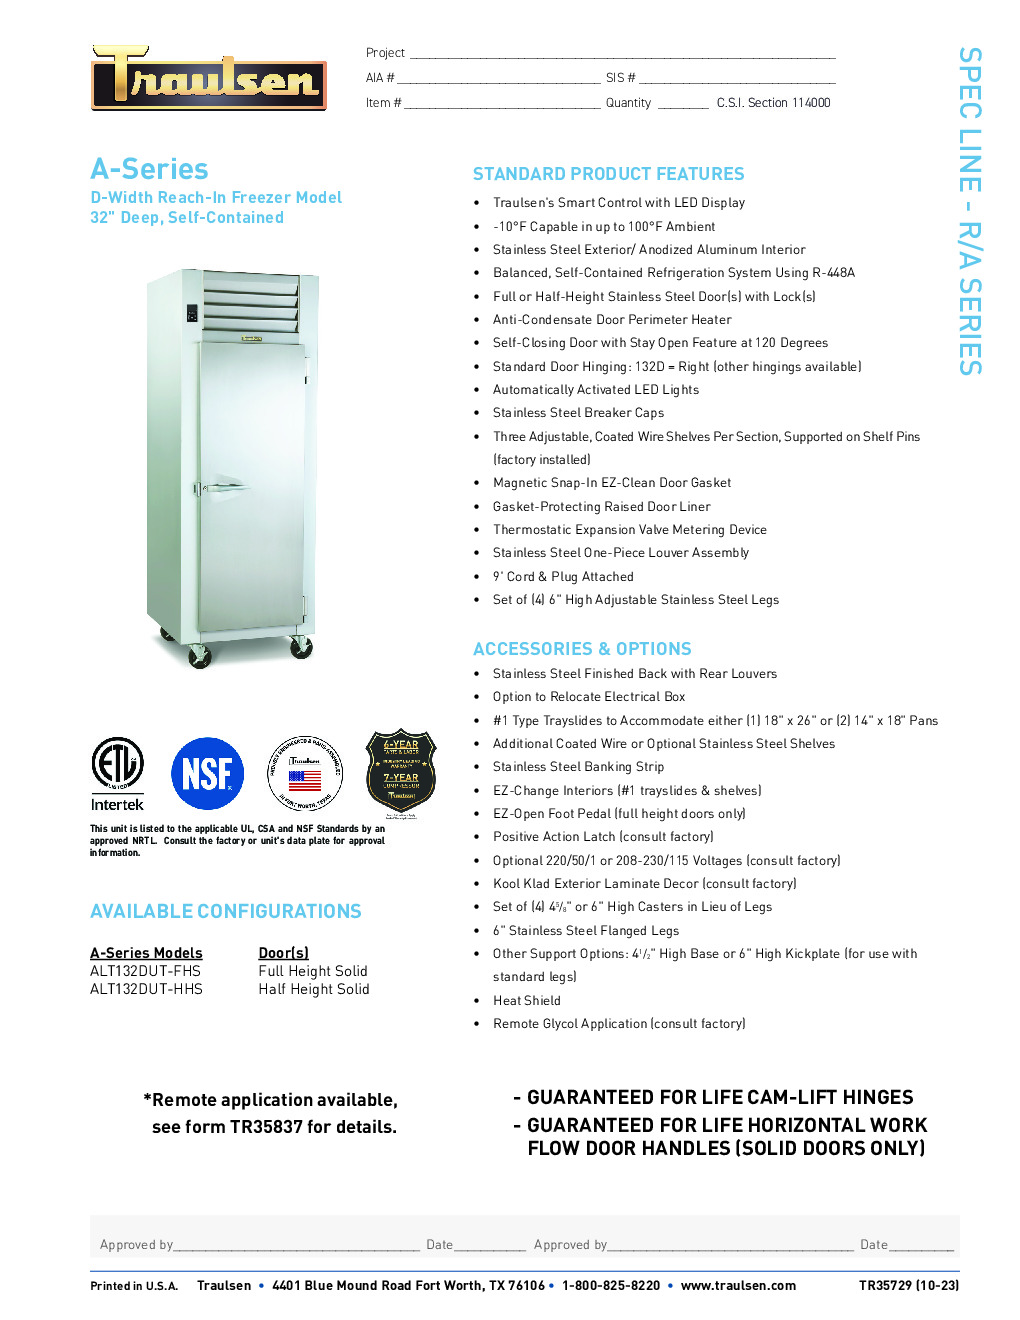 Traulsen ALT132D-FHS Reach-In Freezer